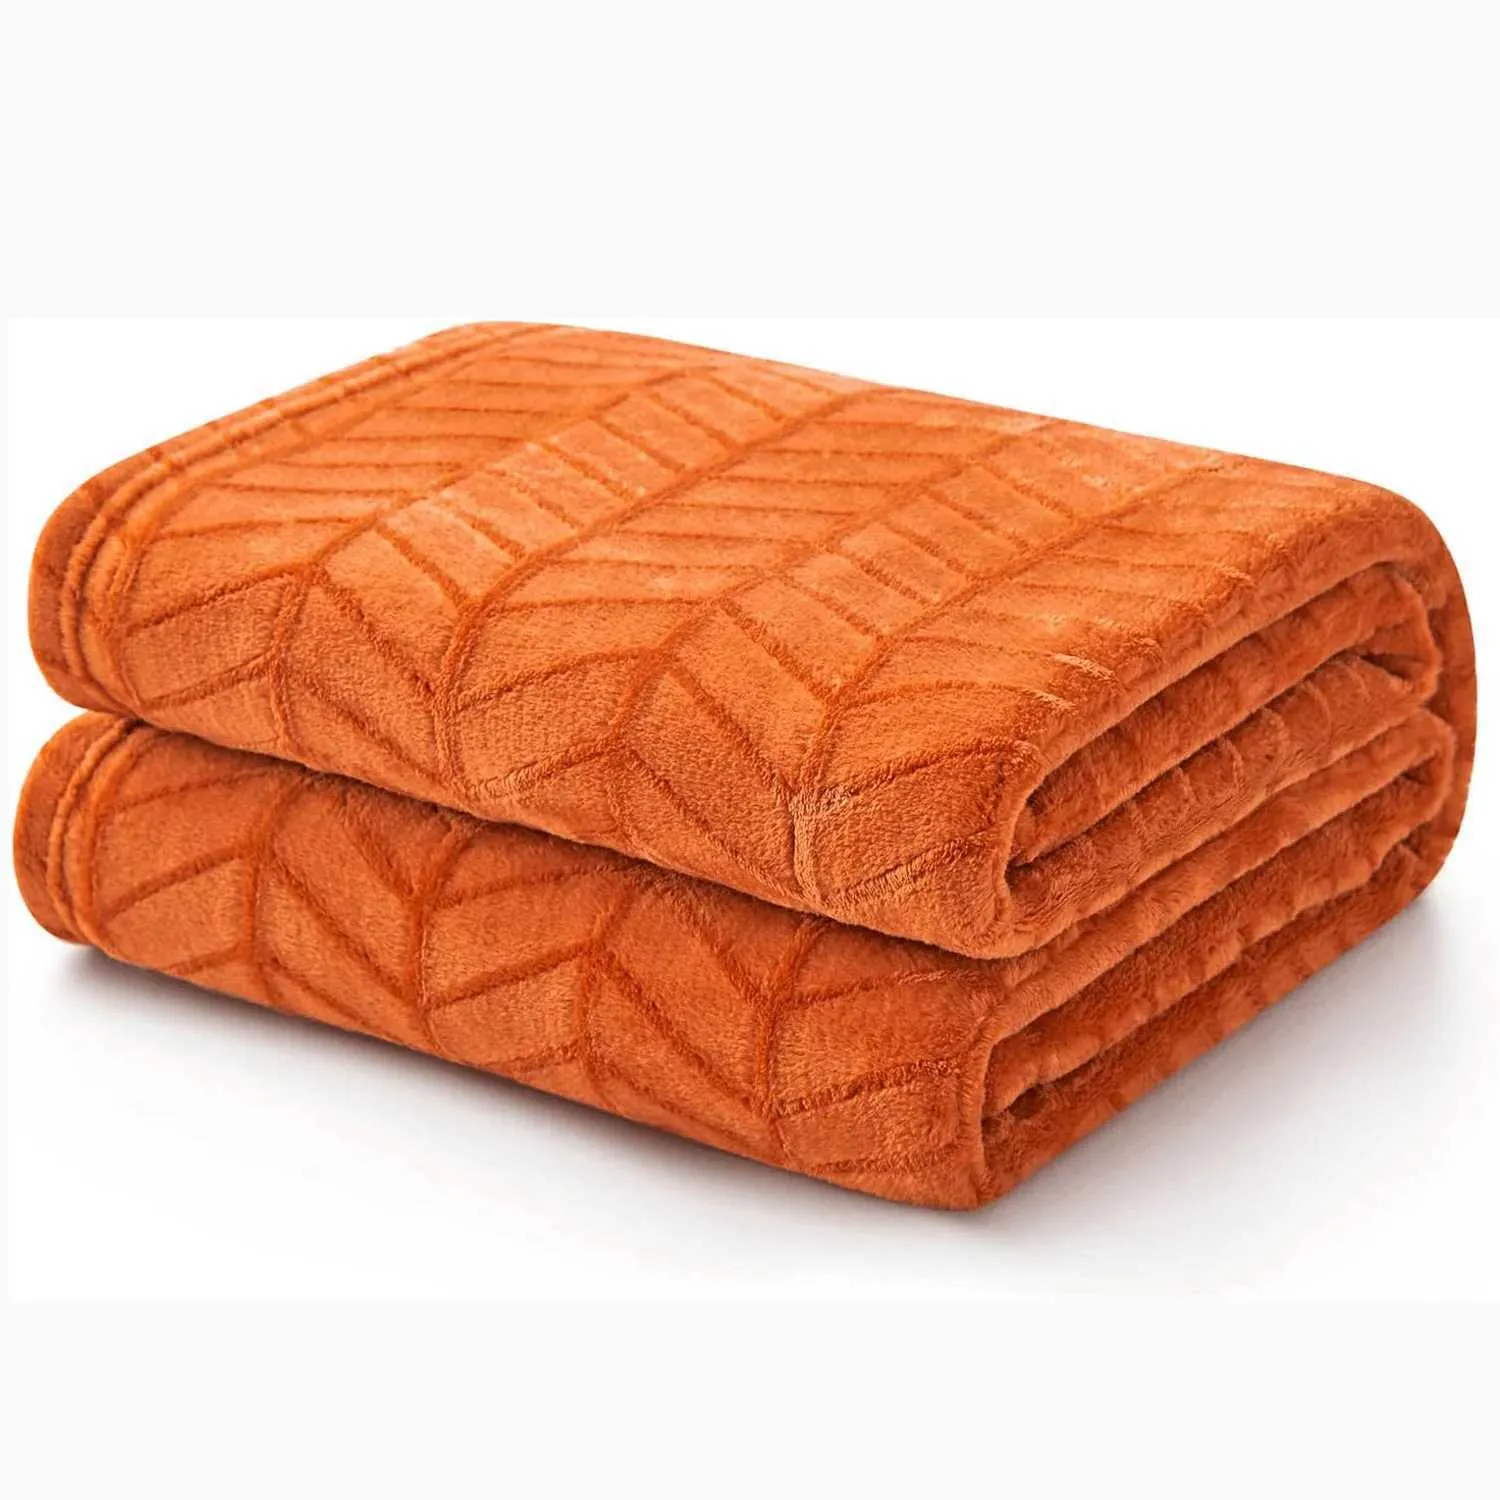 Couvertures à jet de flanelle brossé doux couverture couverture en toison orange brûlé motif de chevron pour canapé canapé-canapé - moelleuse chaleureuse confortable